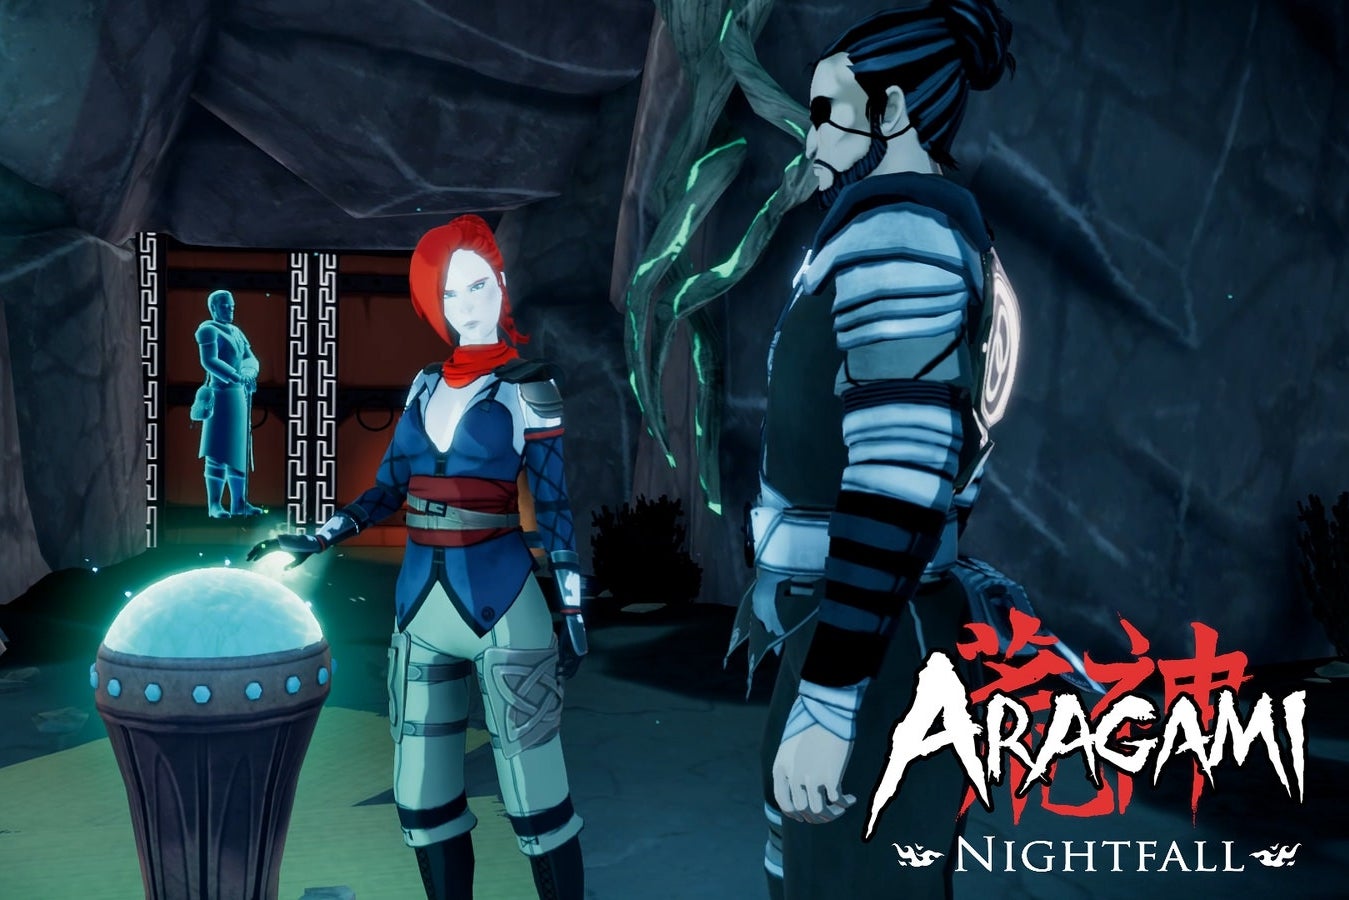 Imagen para Lince Works anuncia Nightfall, la expansión de Aragami